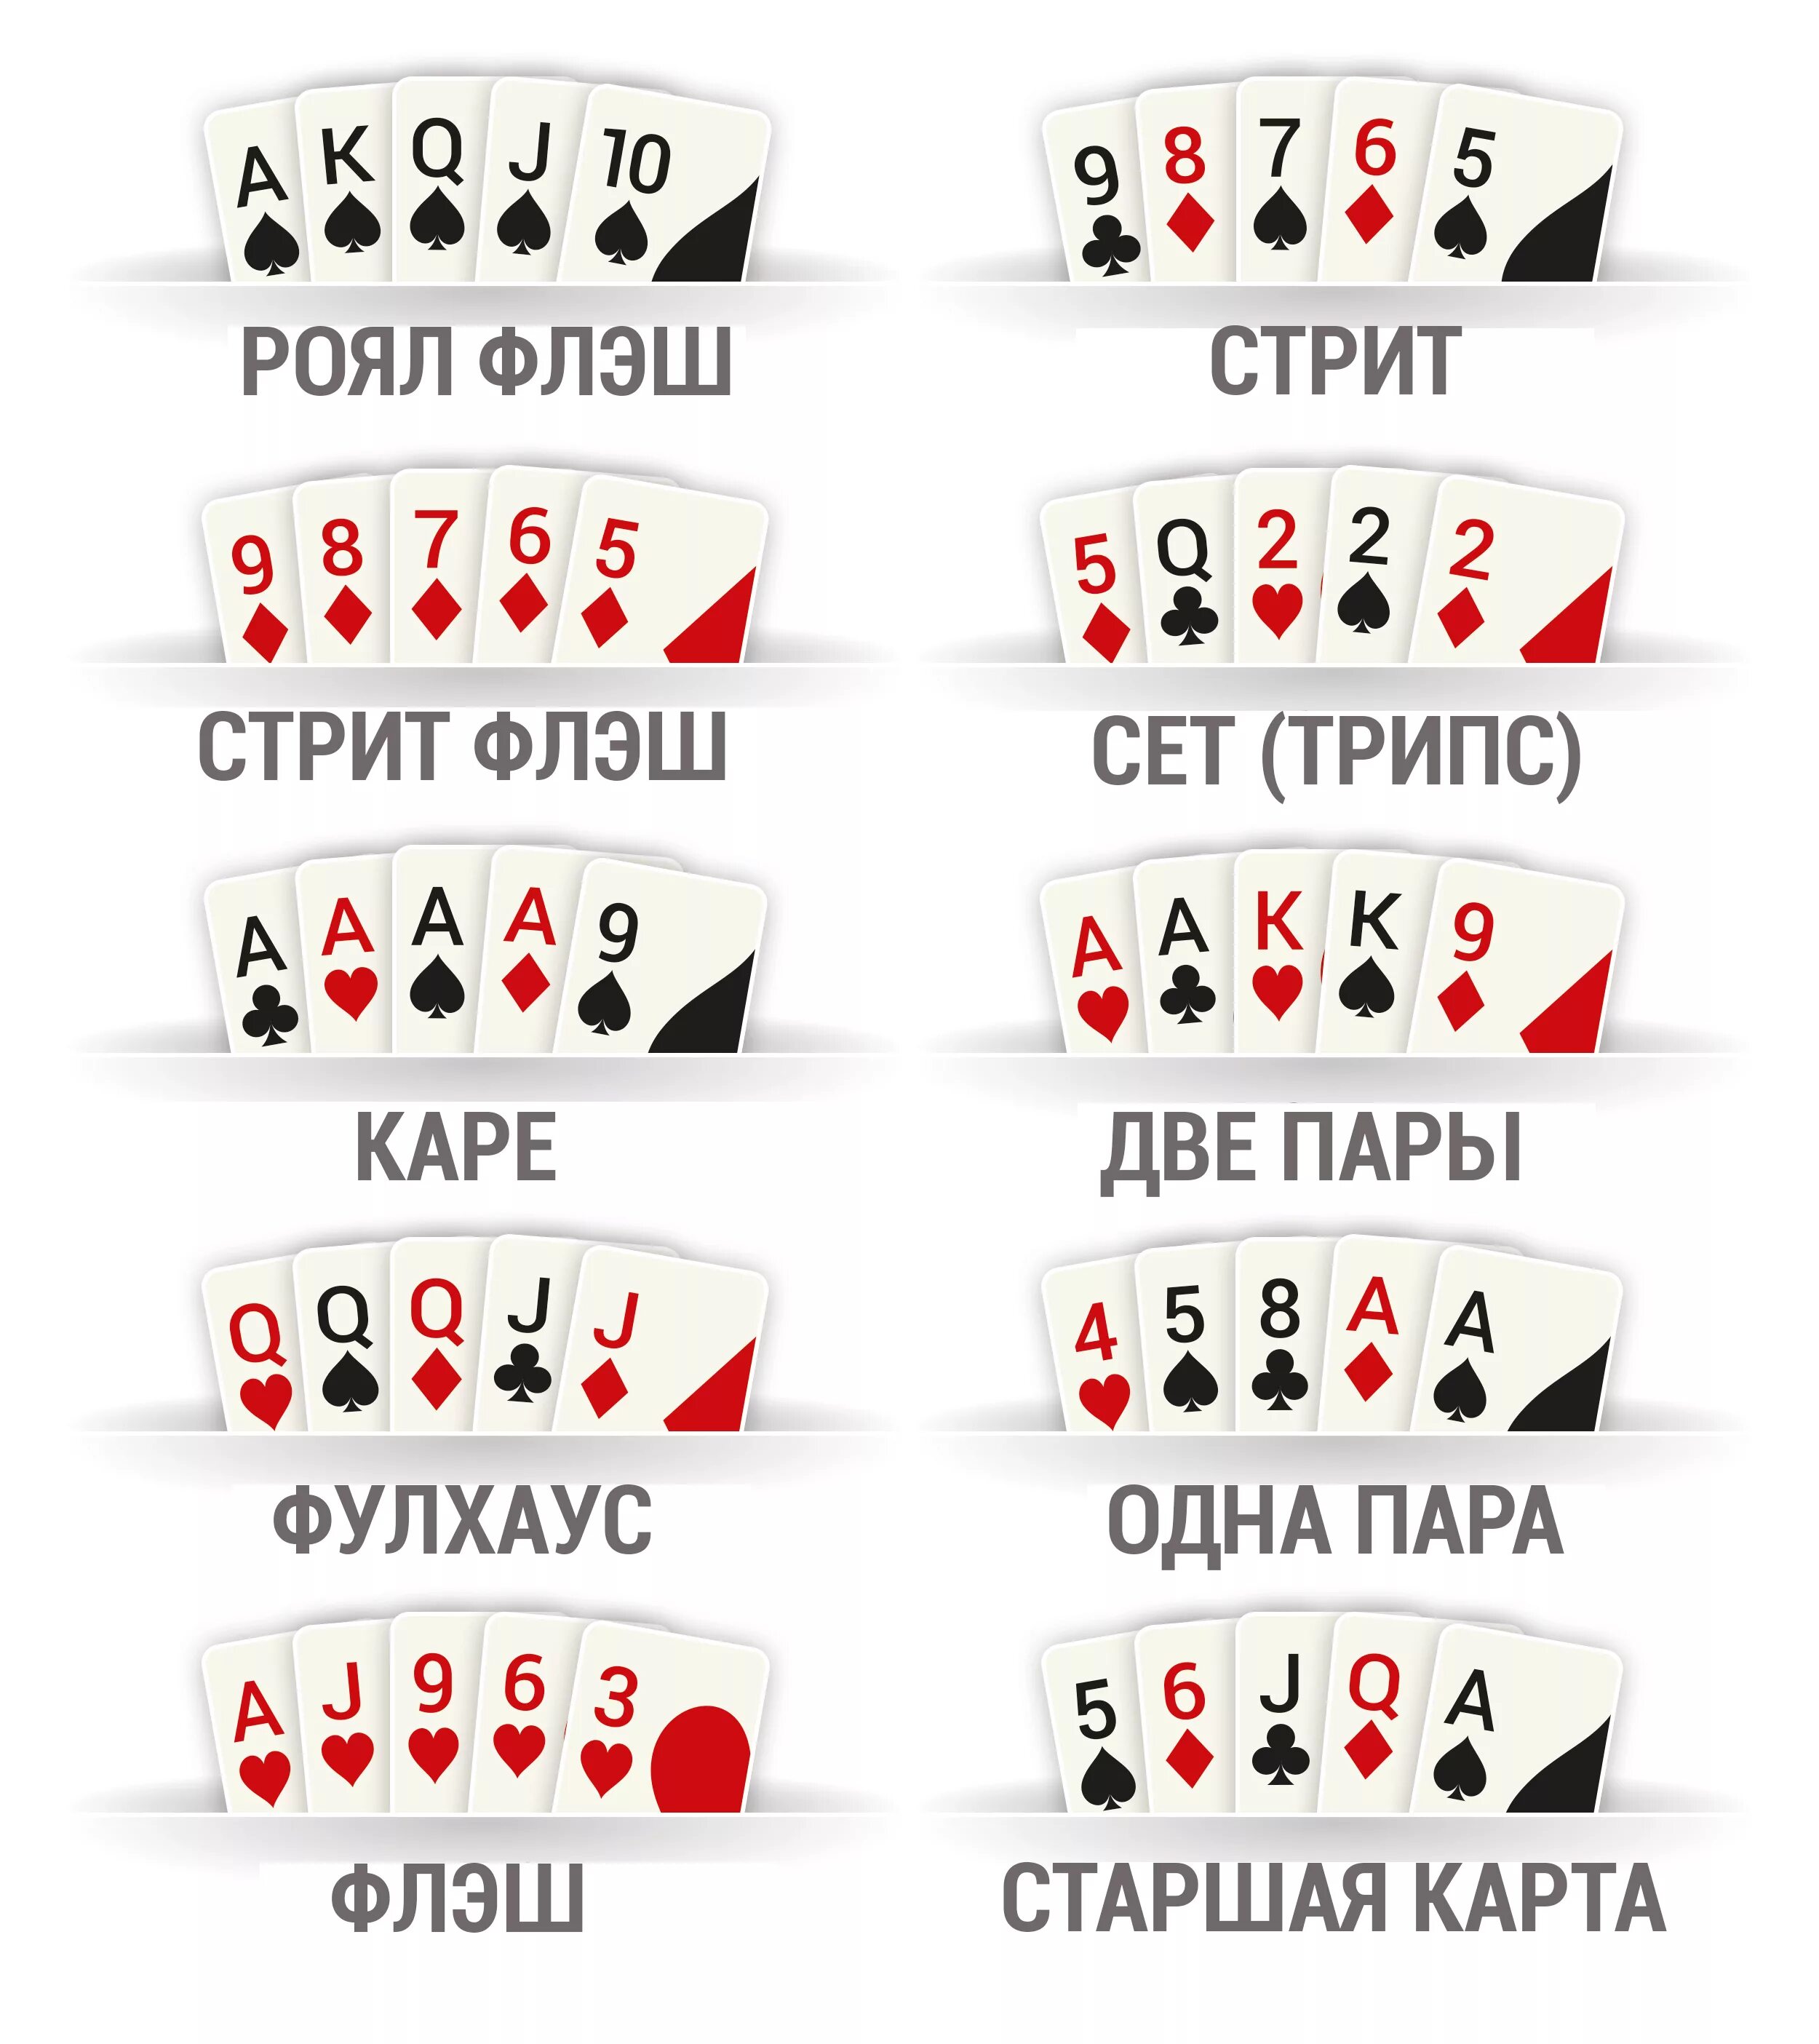 Комбинации карт в покере по старшинству. Комбинации в покере 2 карты. Комбинации карт в покере Техасский холдем. Порядок комбинаций в покере.